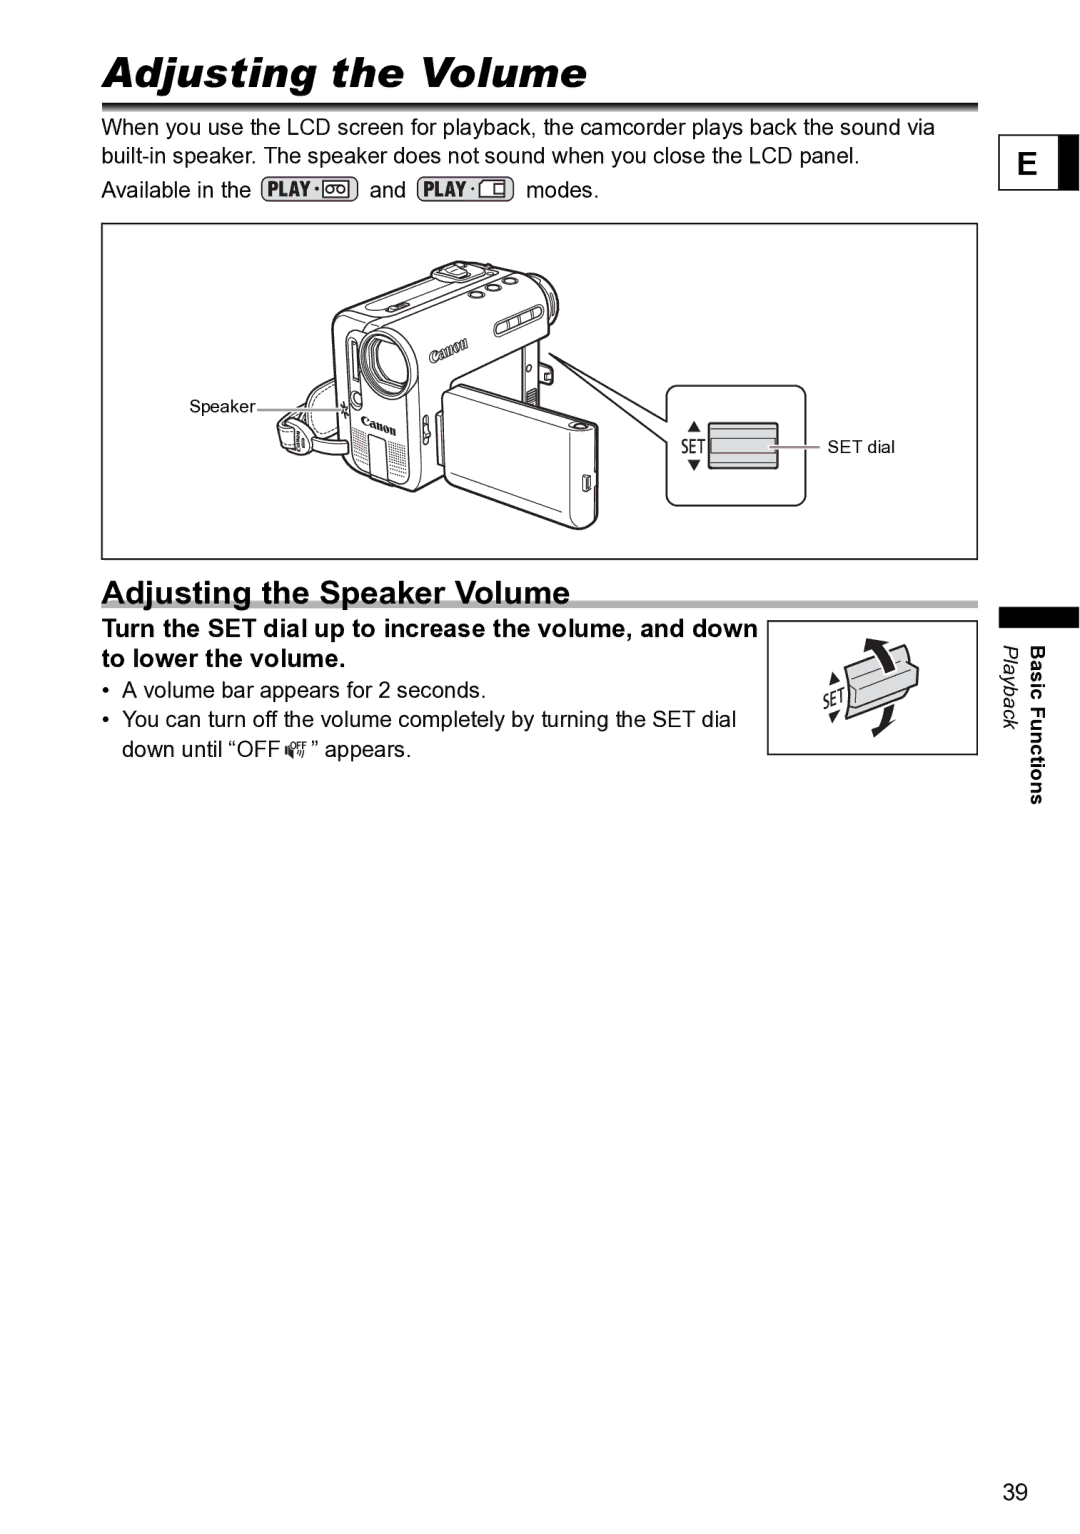 Canon S1 instruction manual Adjusting the Volume, Adjusting the Speaker Volume 